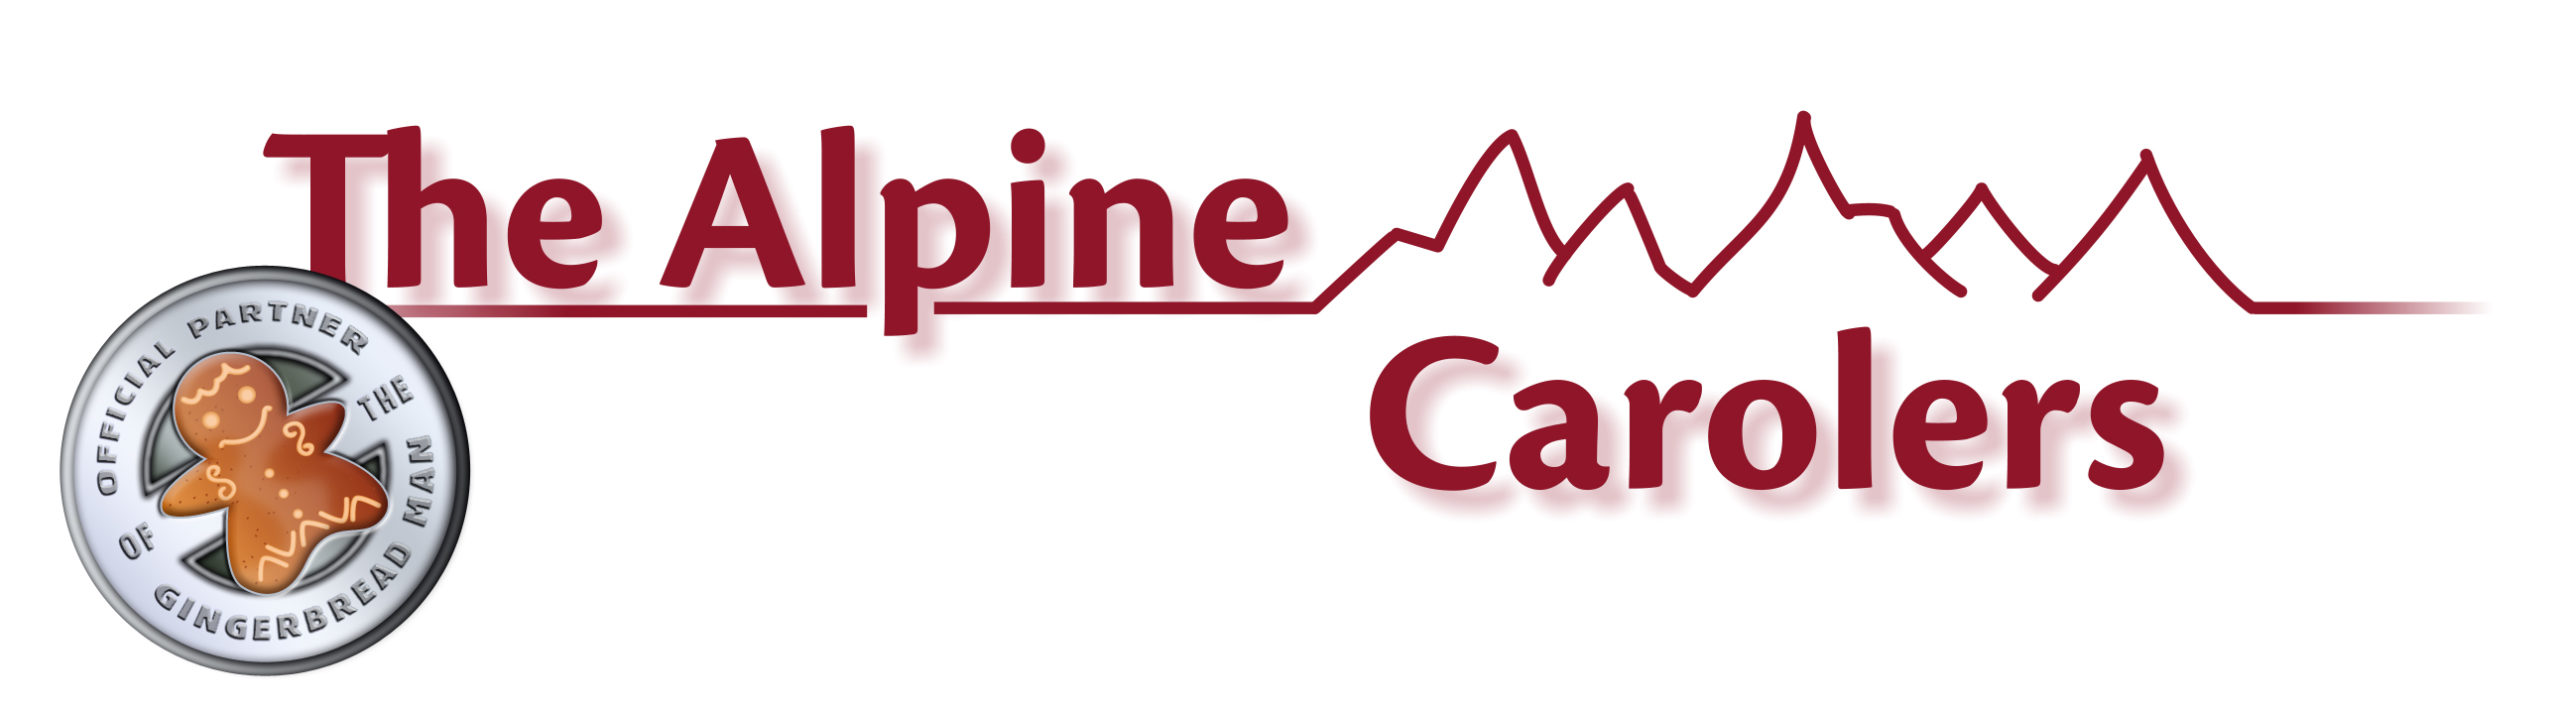 The Alpine Carolers